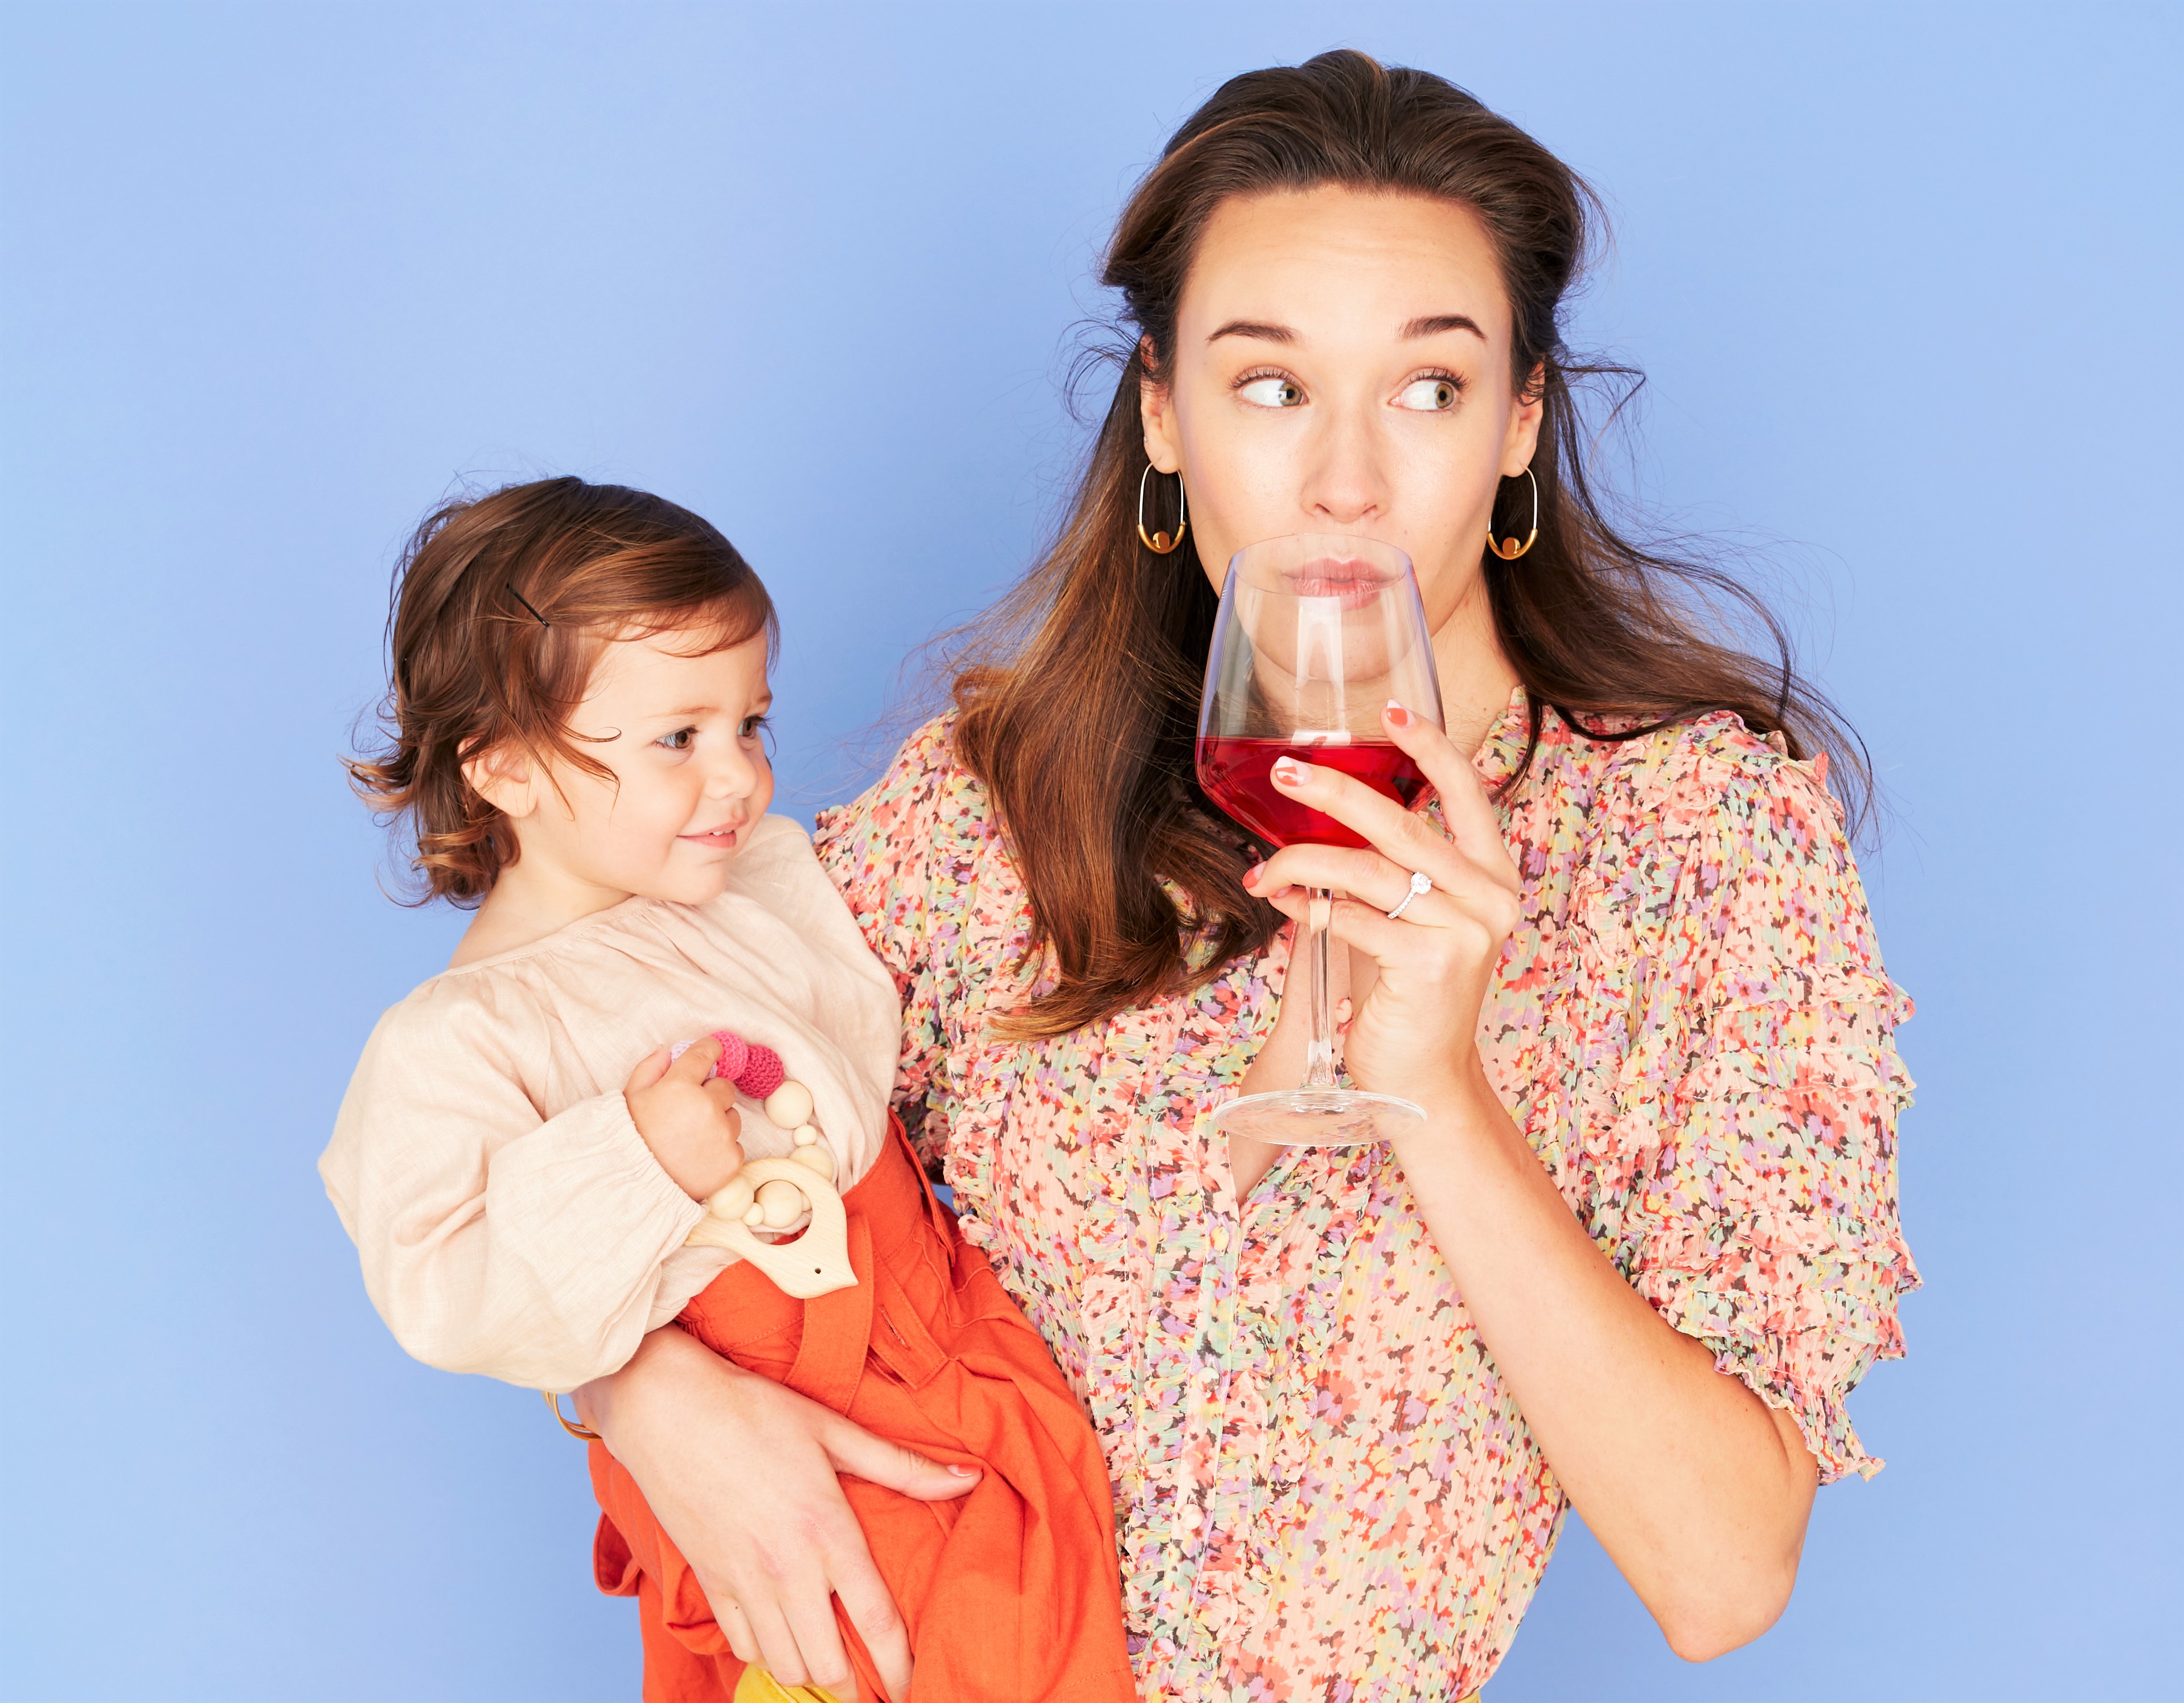 La crianza de los hijos con un zumbido: ¿Cuándo se convierte en un problema el alcohol como autocuidado?